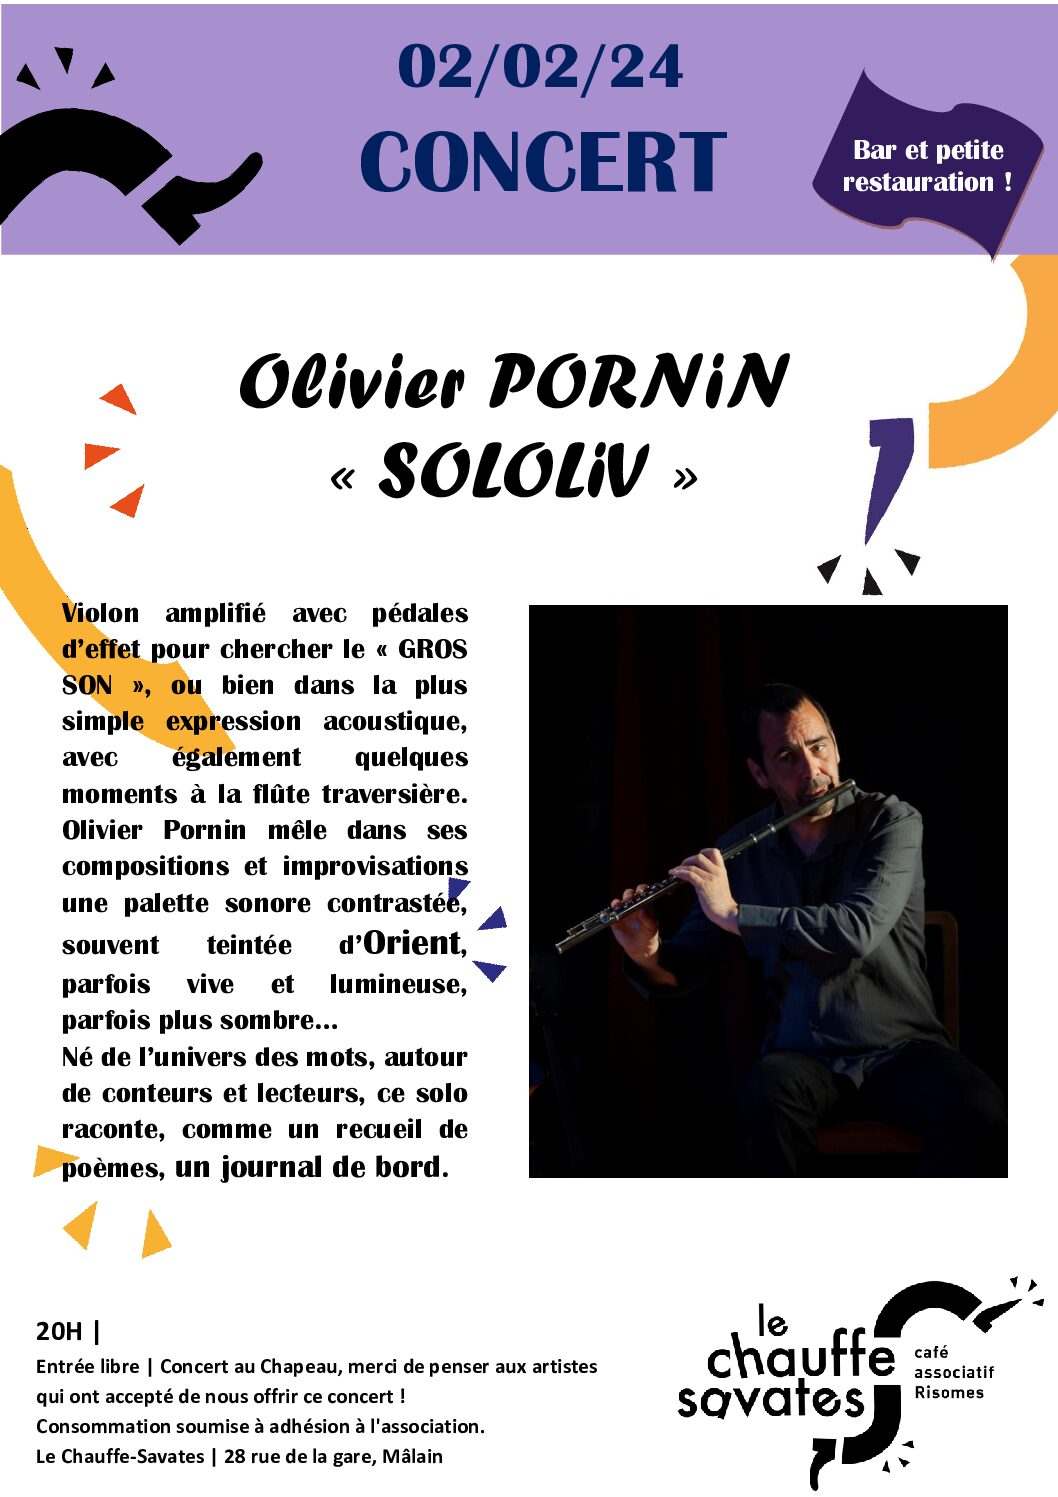 [Concert]  « Sololiv » de Olivier Pornin – 2 février 2024